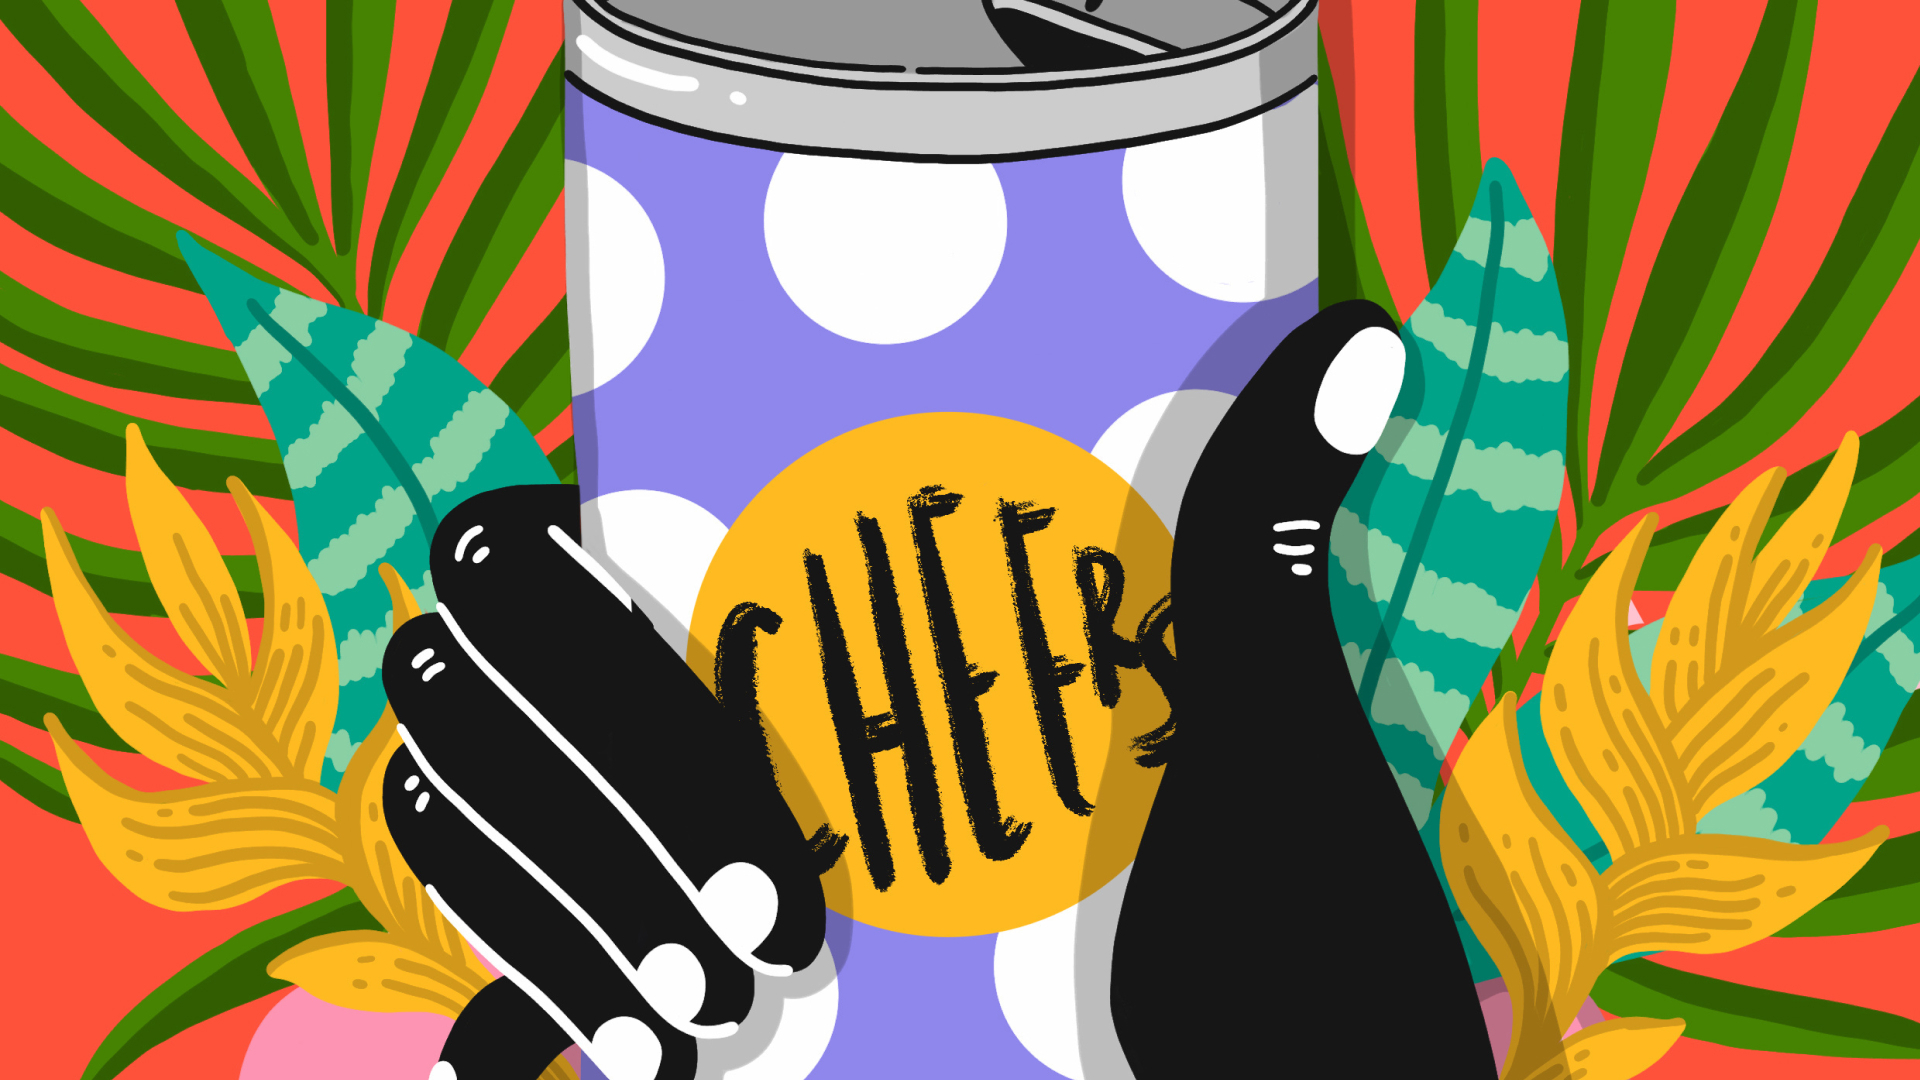 「CHEERS」と書かれた缶を握る手を描いたカラフルなイラスト